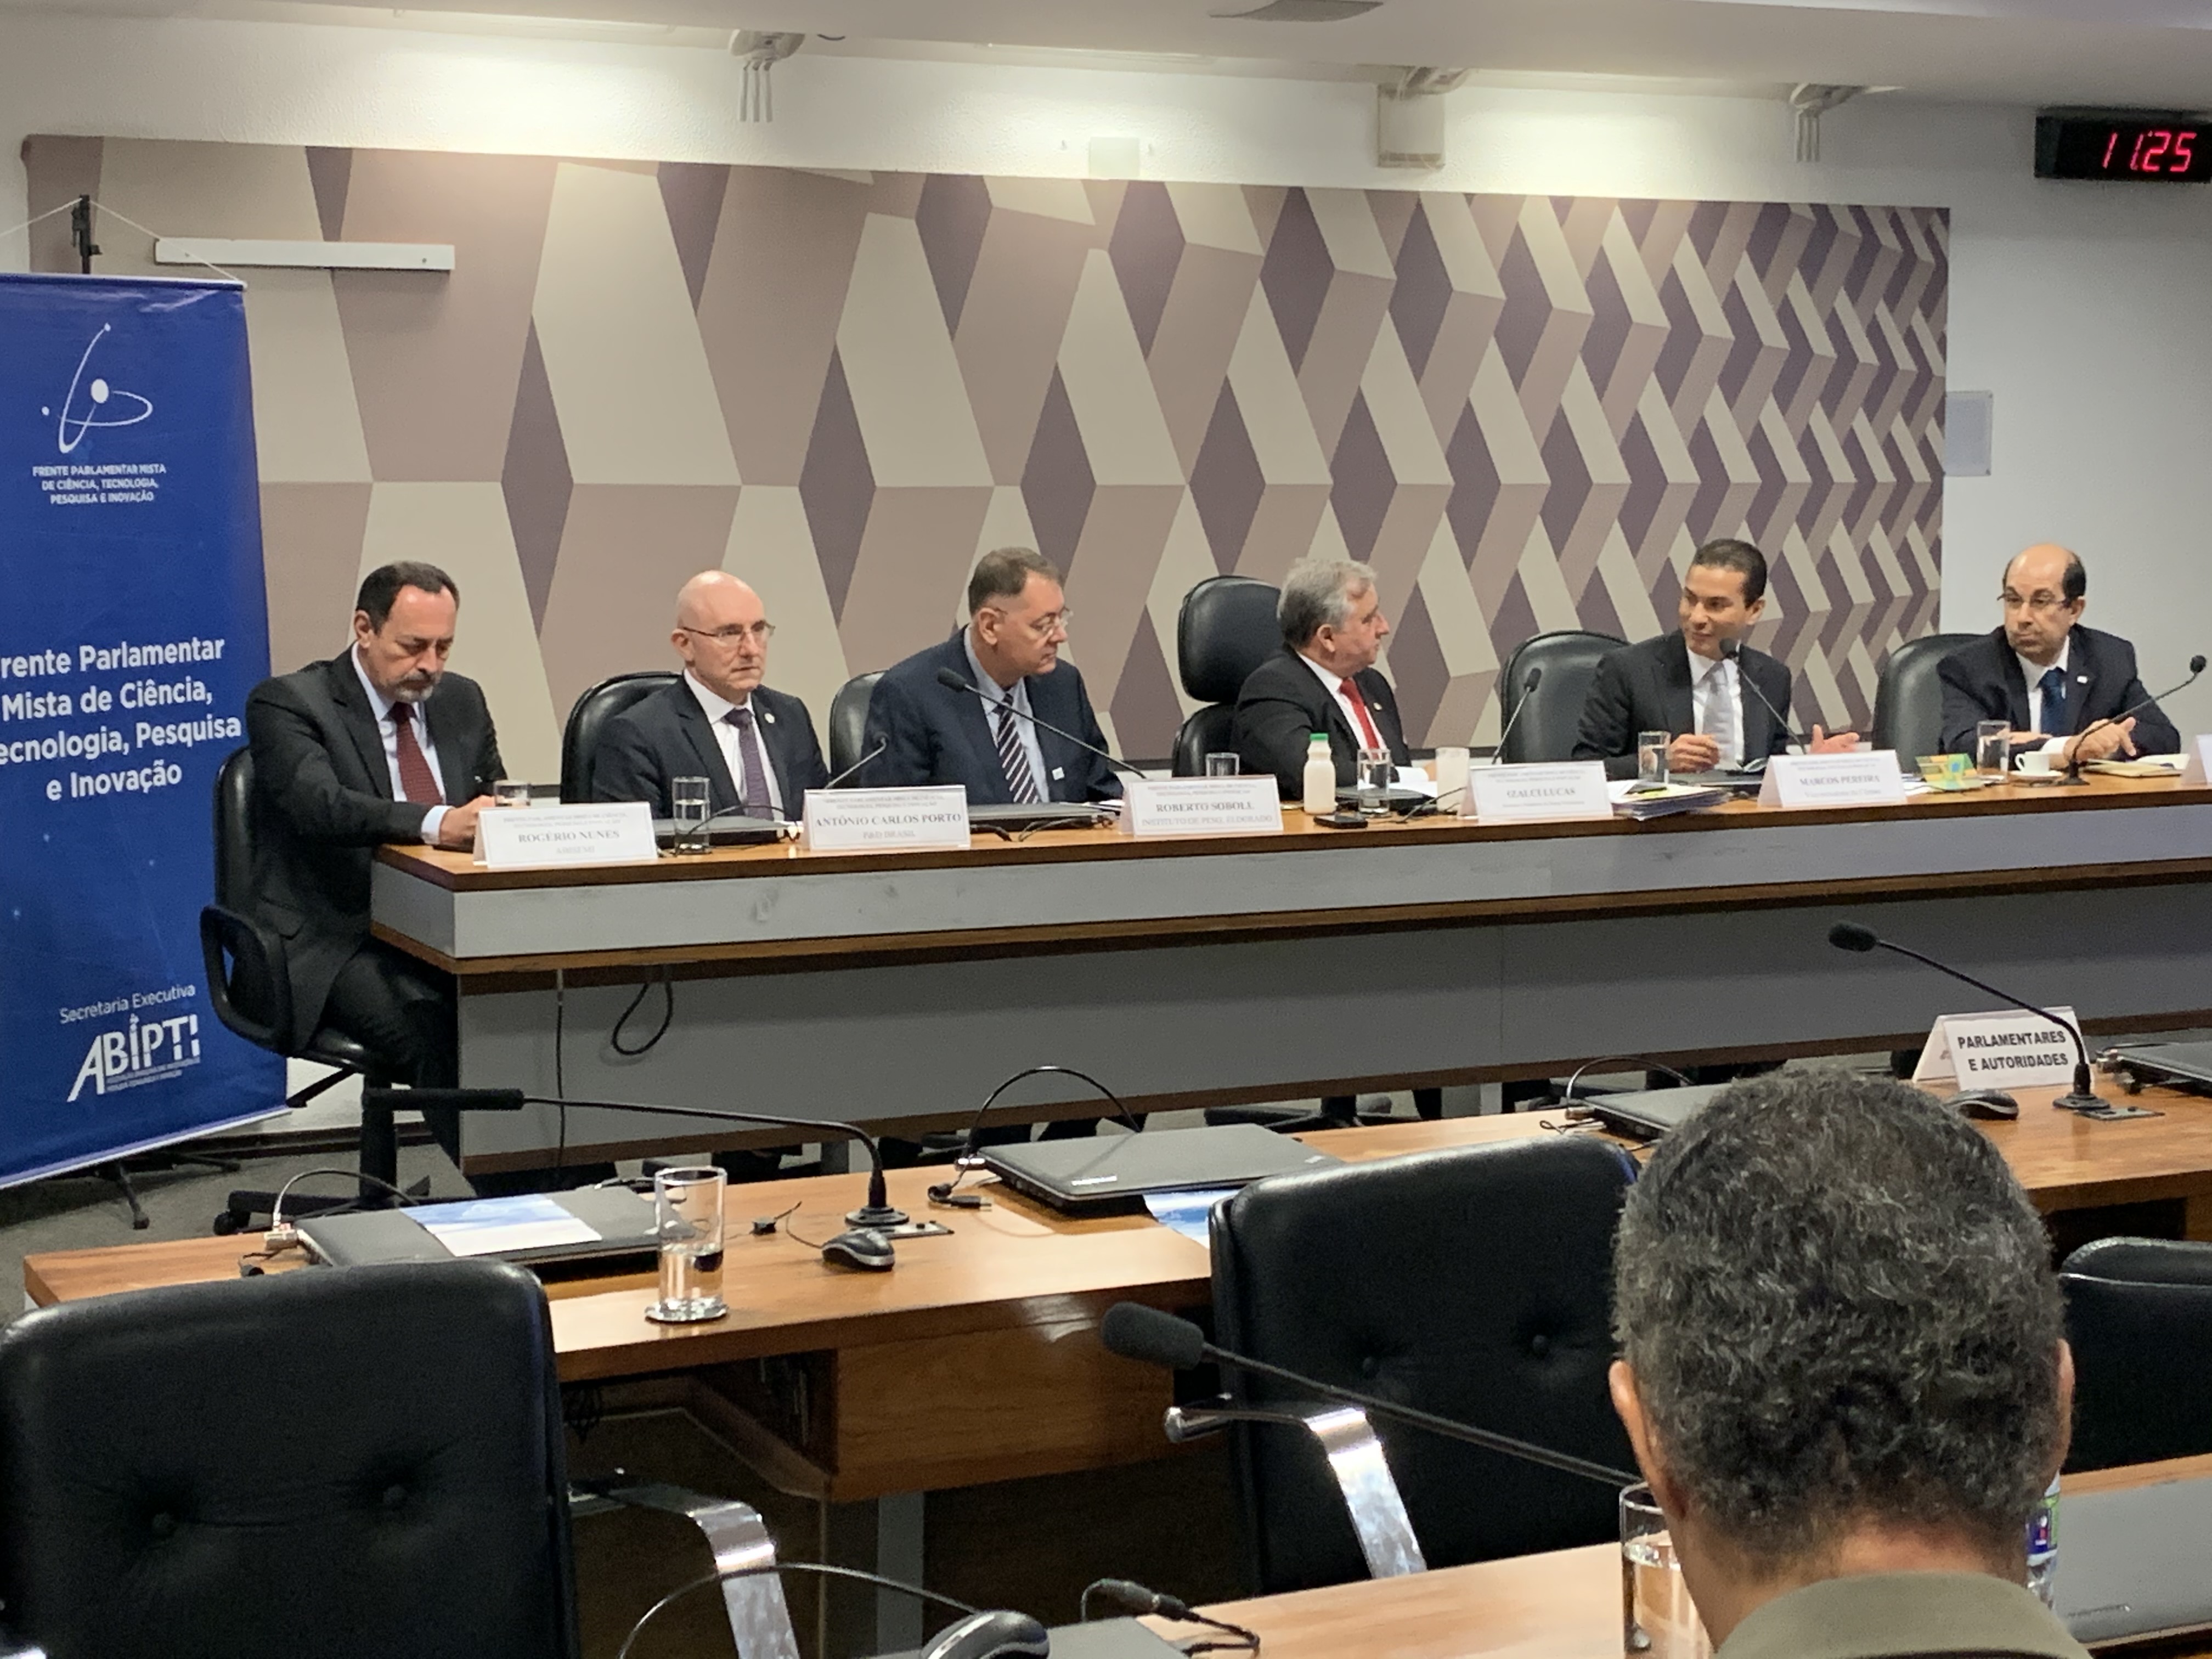 Presidente da P&D Brasil palestra na Reunião da Frente Parlamentar Mista de Ciência, Tecnologia, Pesquisa e Inovação no Senado